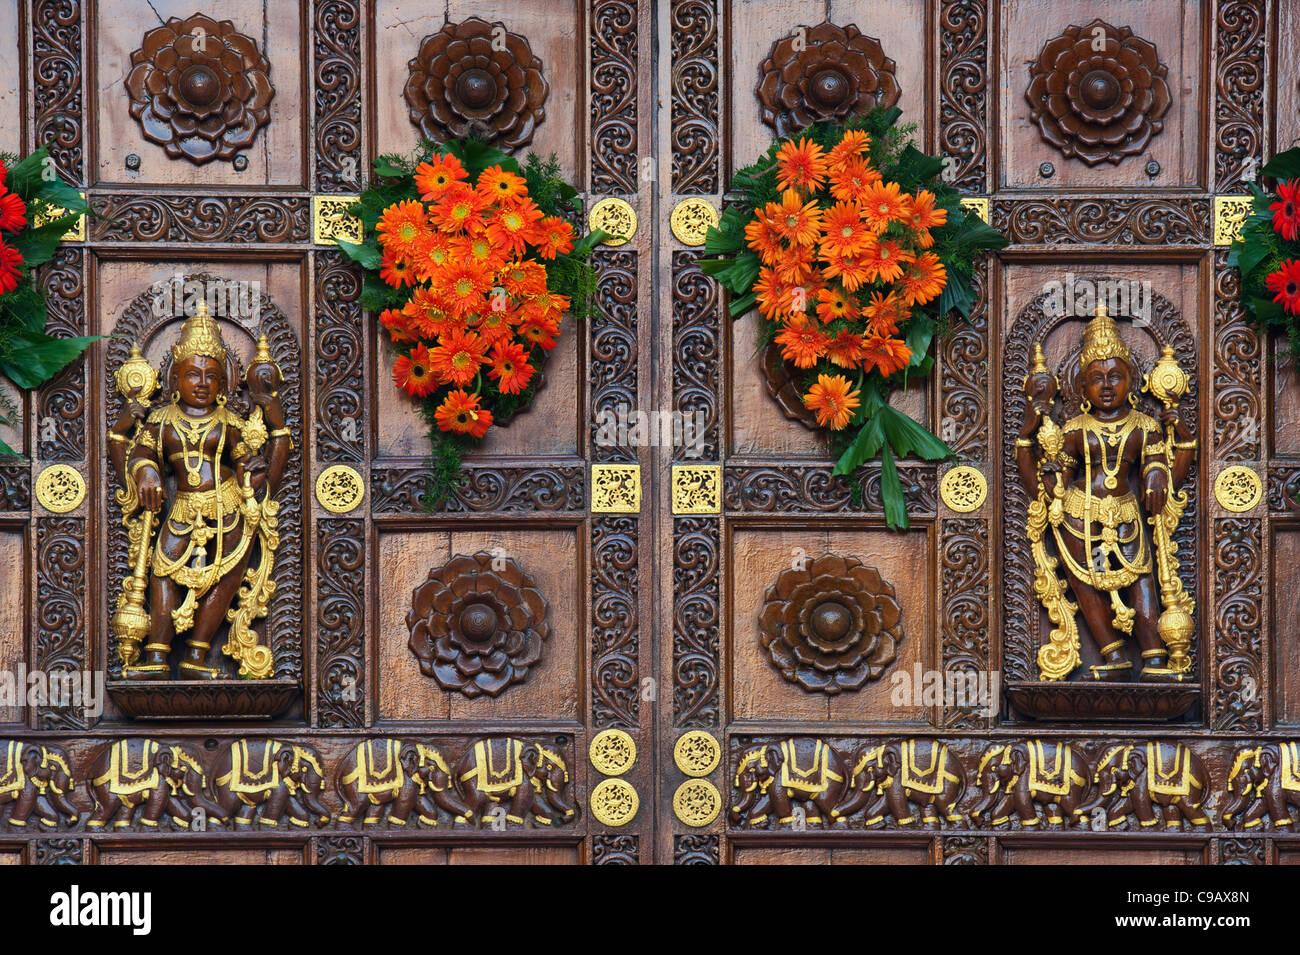 Sathya Sai Baba Ashram, gestaltet aus Holz geschnitzte gopuram Tore. Puttaparthi, Andhra Pradesh, Indien Stockfoto